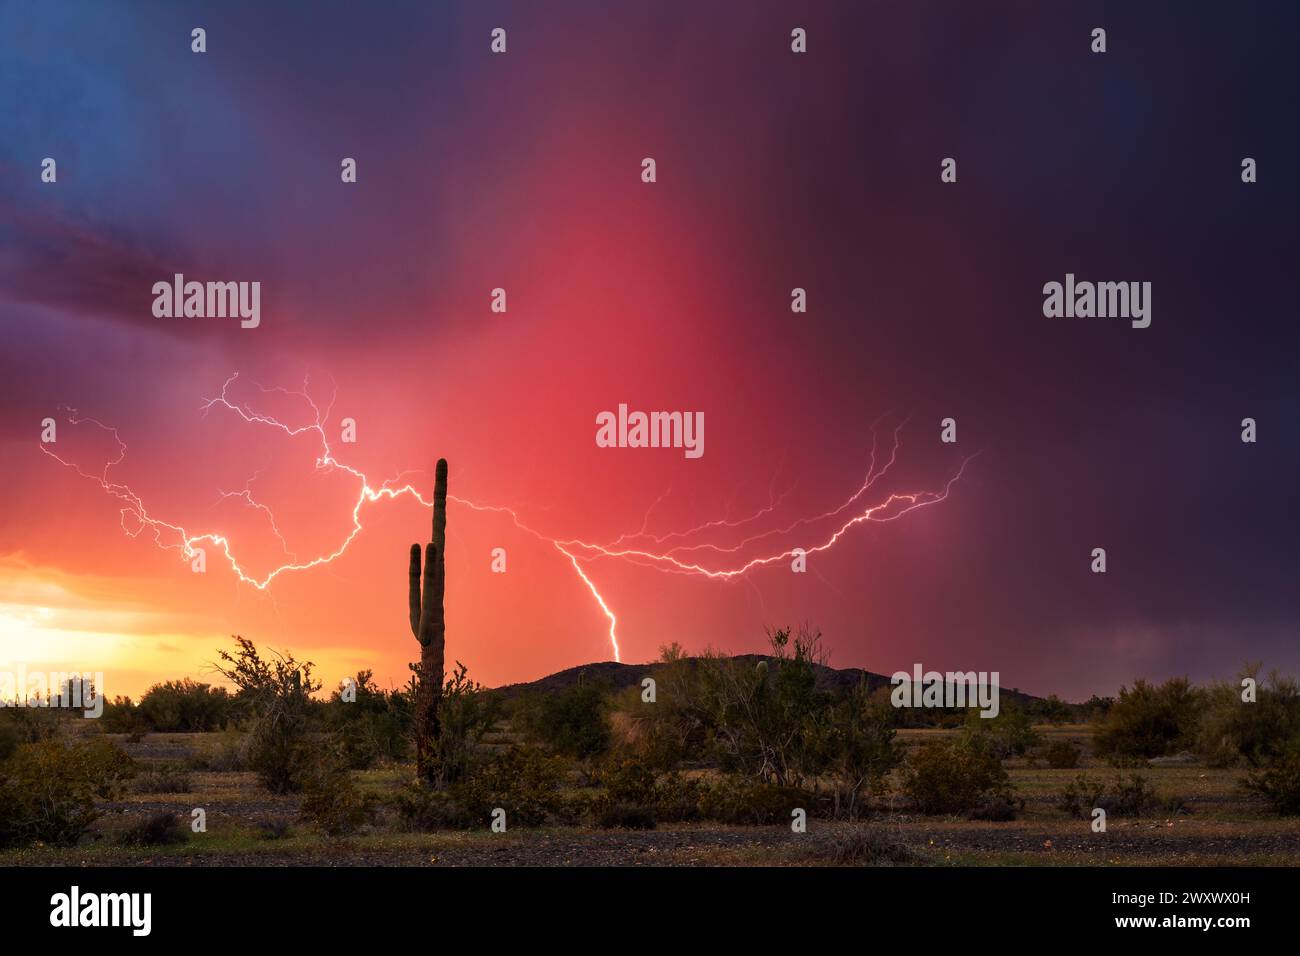 Sonnenuntergangslandschaft in der Wüste von Arizona mit Blitzen und Saguaro-Kakteen. Stockfoto